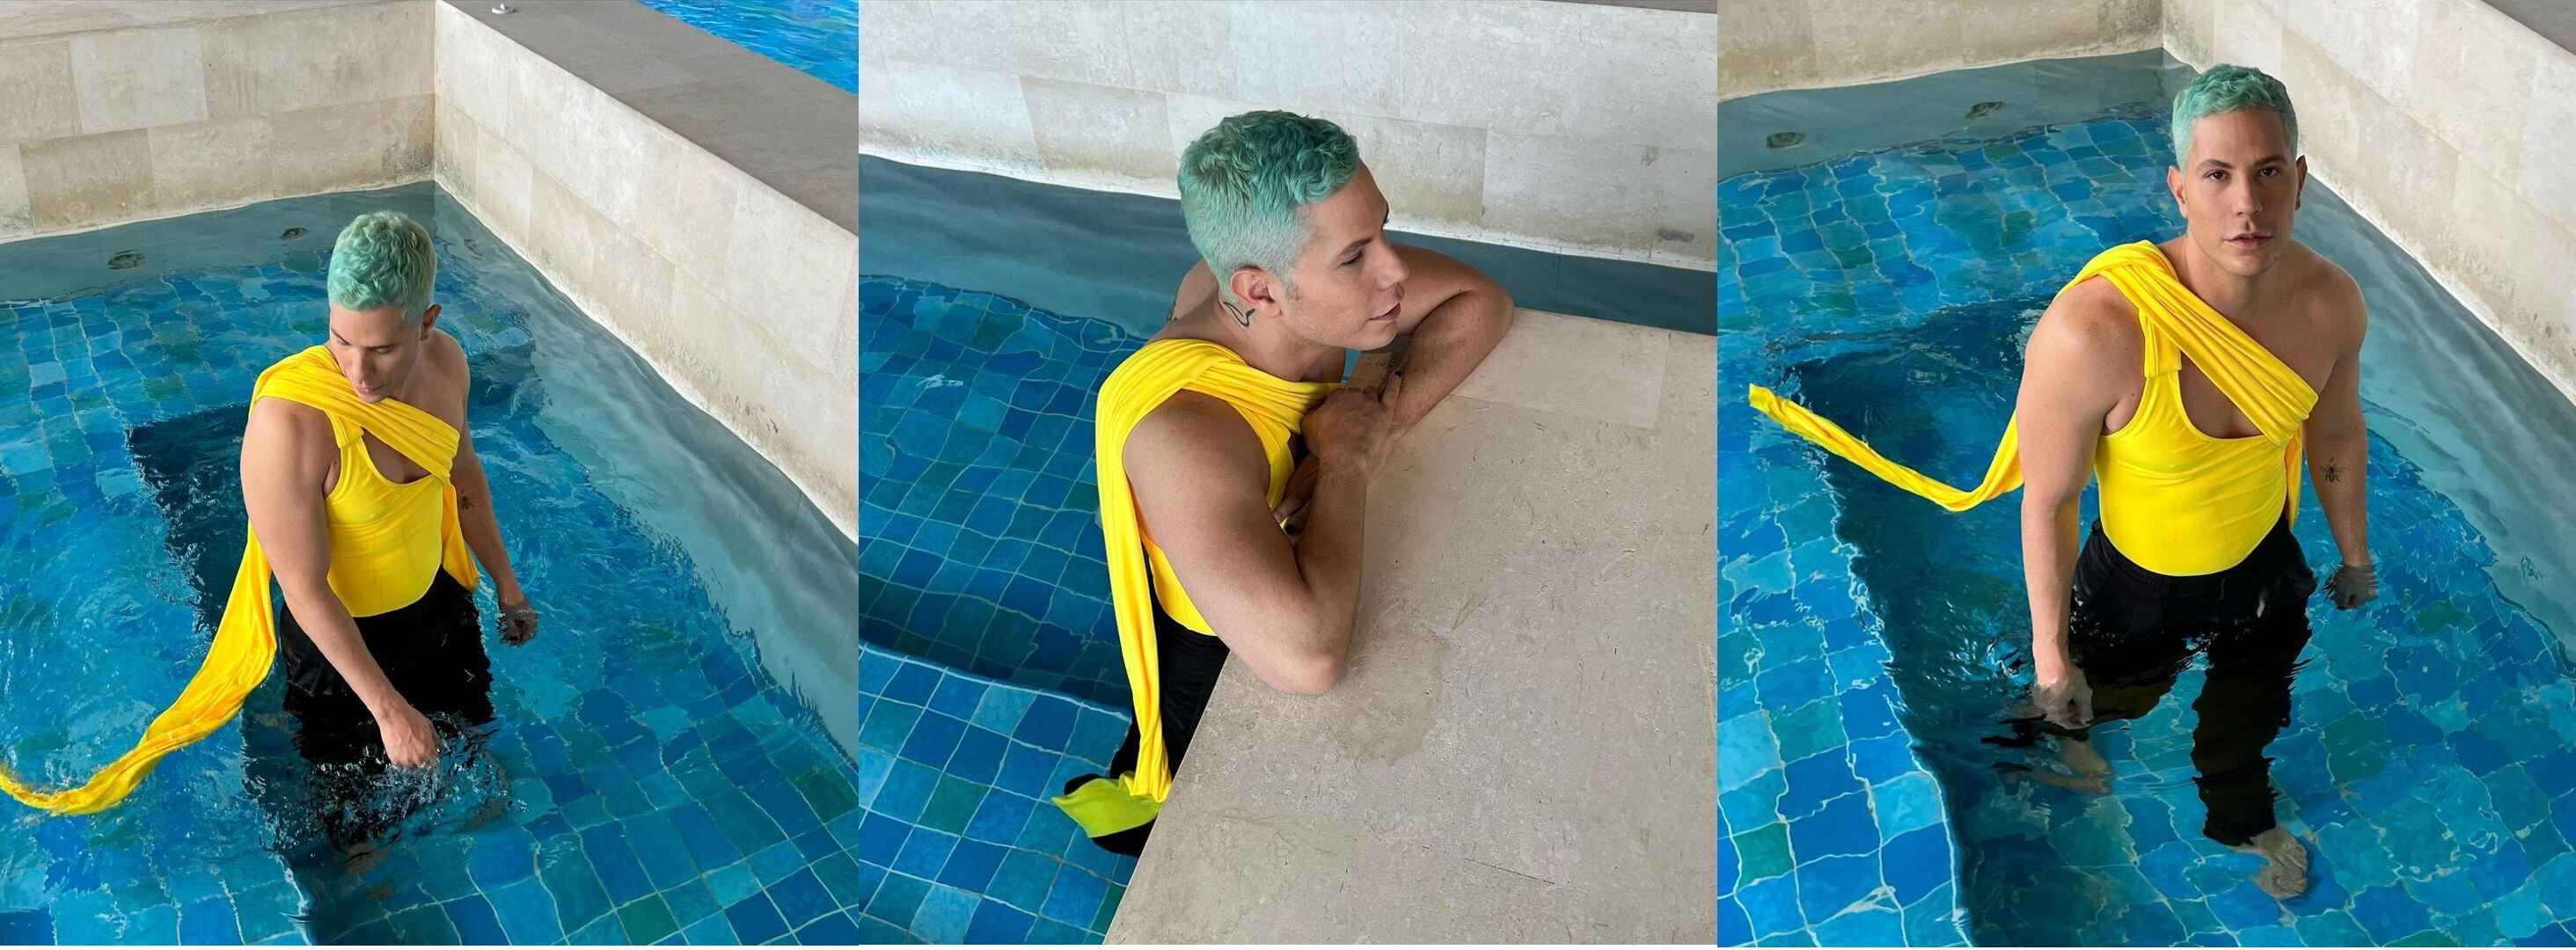 El actor publicó esta serie de fotos con el 'outfit' que lo obsesiona últimamente. Instagram.